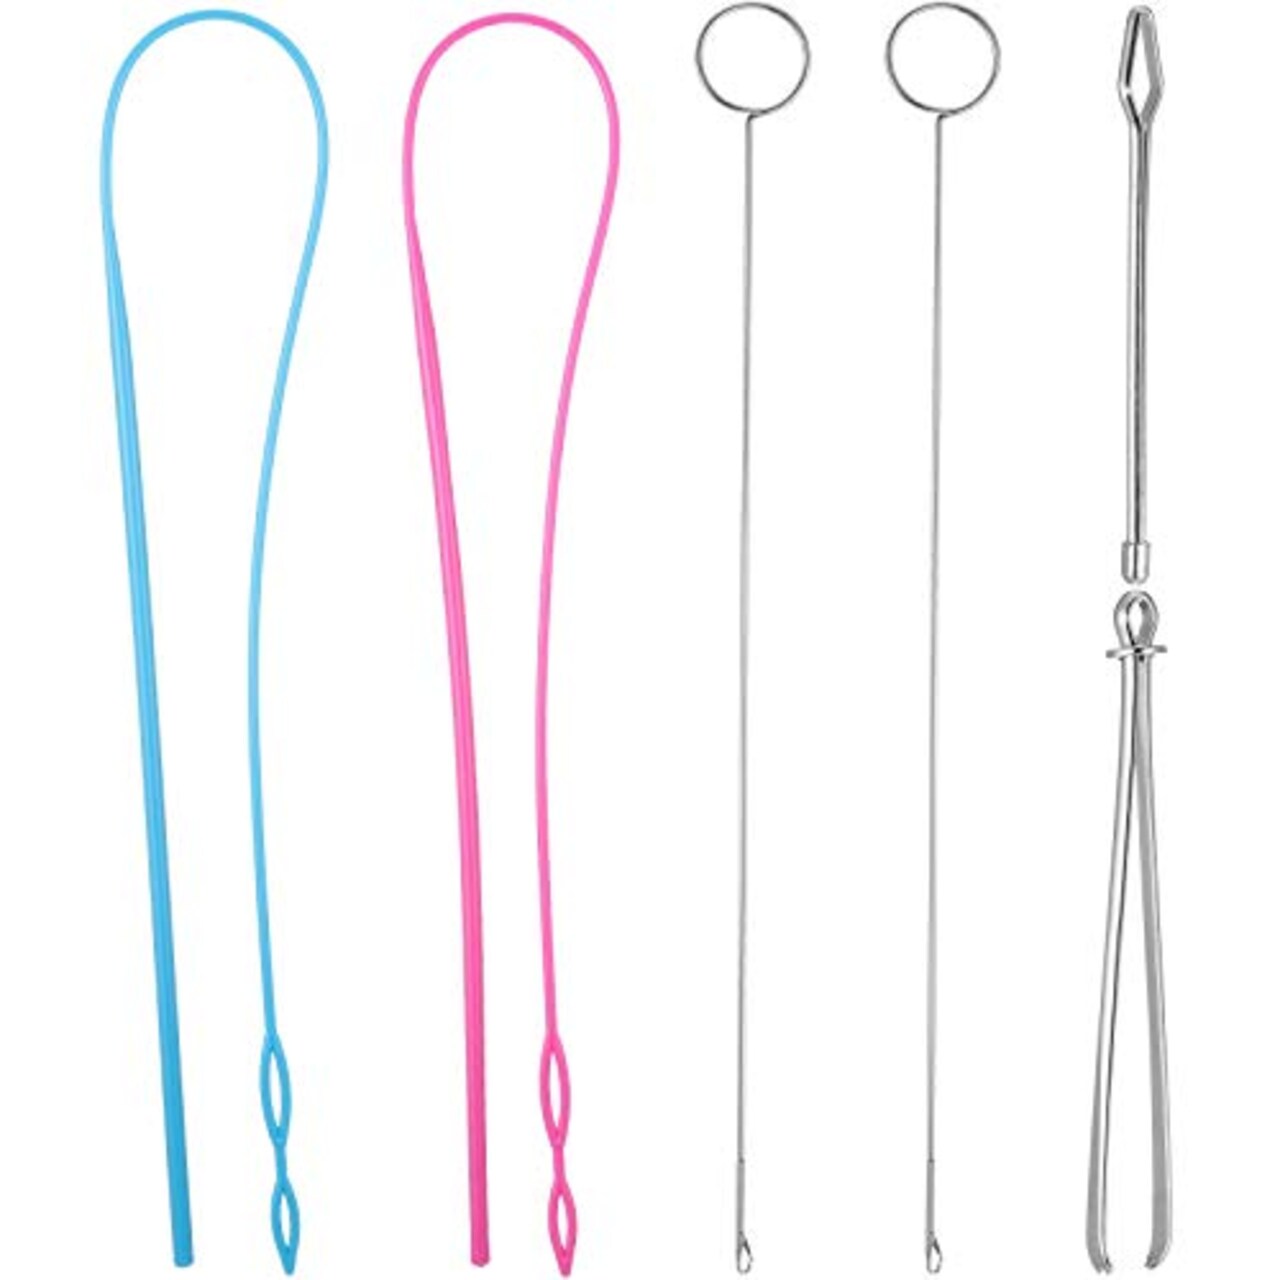 6 Pieces Sewing Loop Kit, Include Loop Turner Hook Flexible